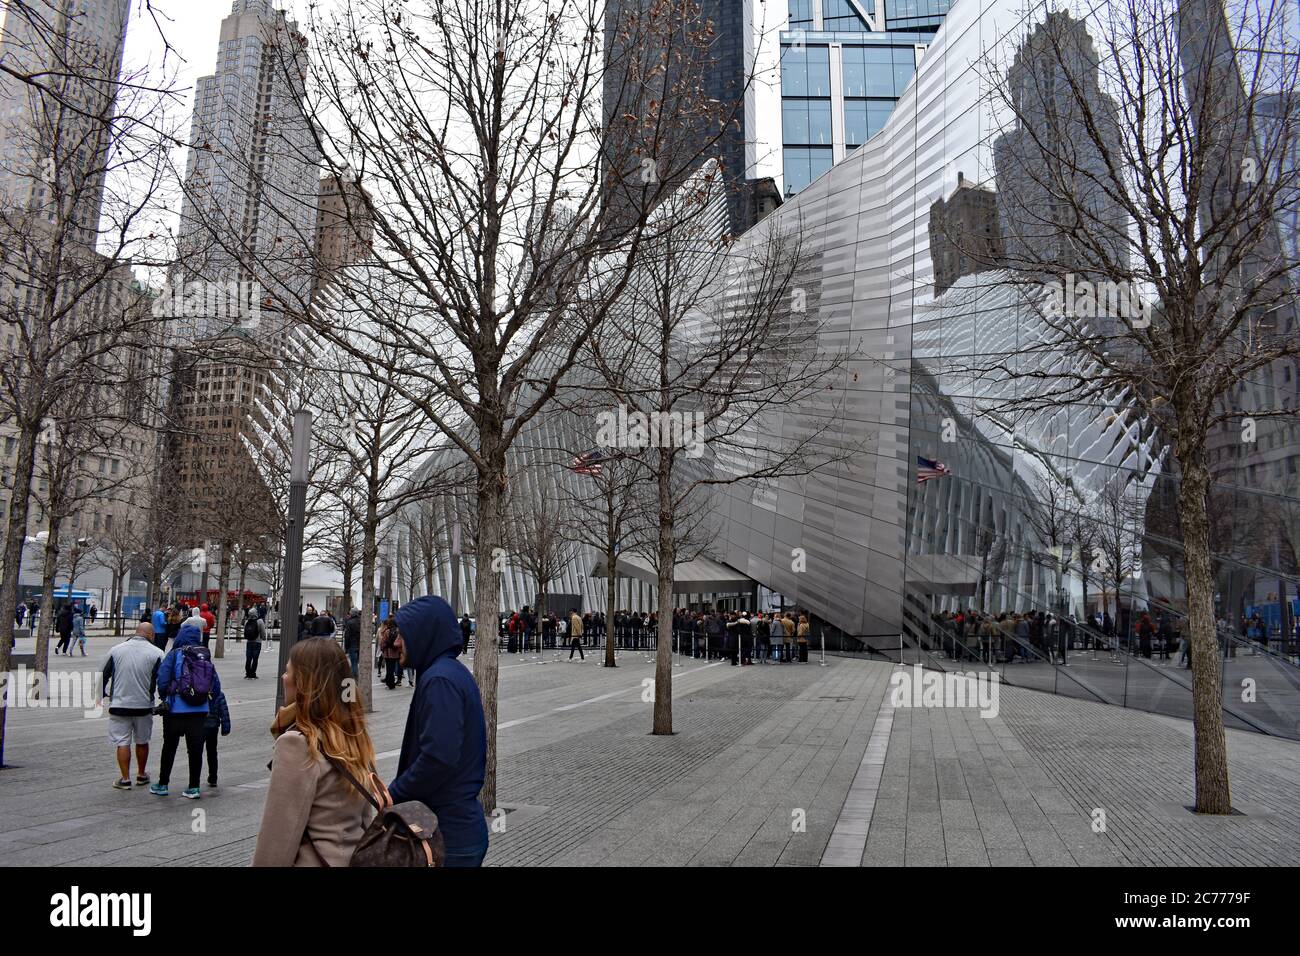 Touristes se promenant dans le centre du commerce mondial en face de l'architecture moderne du mémorial et musée Nation 9/11. Banque D'Images